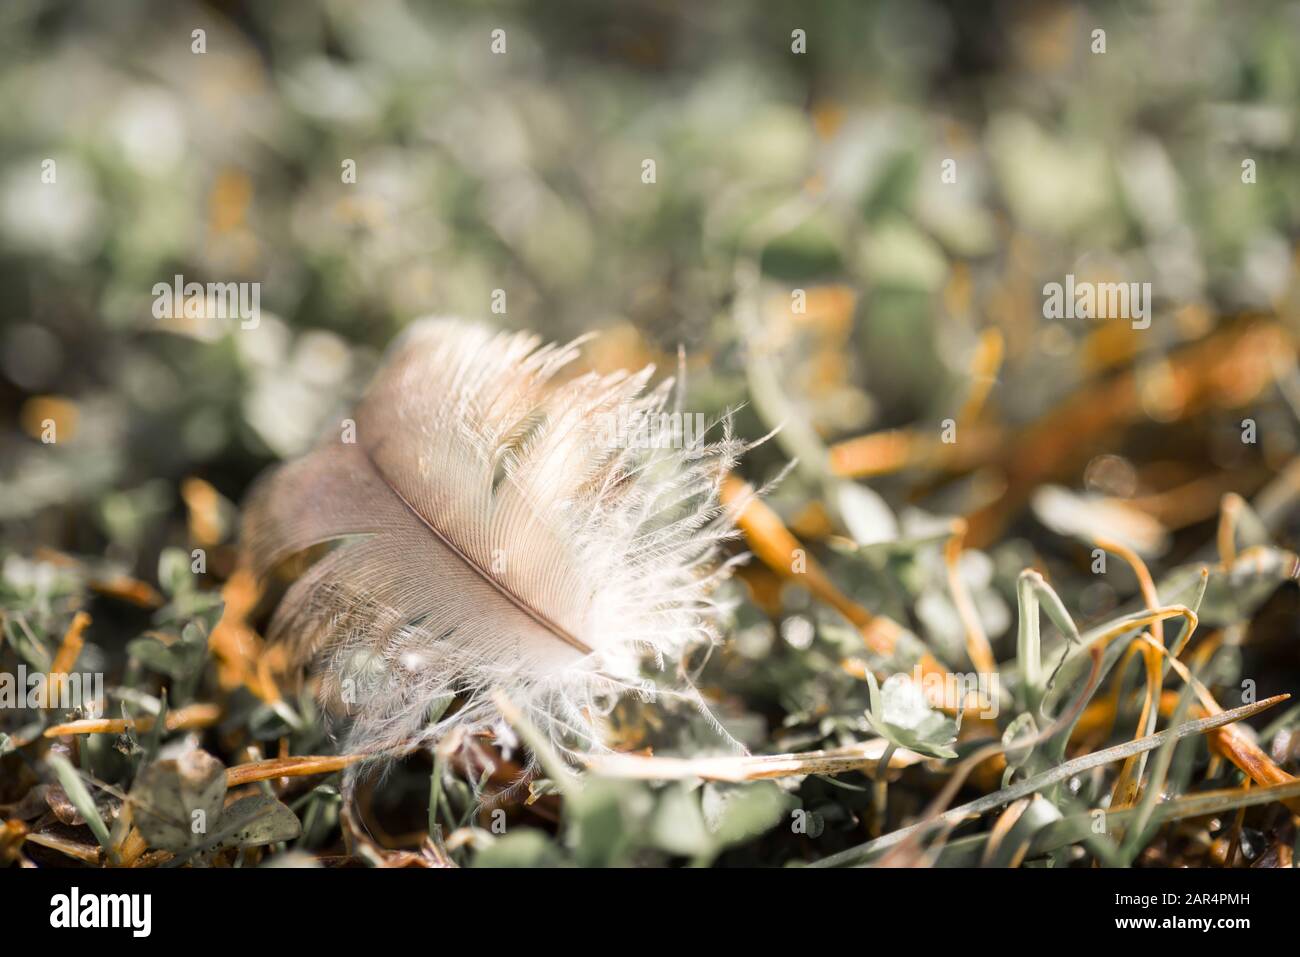 Kleine winzige Feder eines Vogels, der auf Gras sitzt. Nahaufnahme Makro. Stockfoto